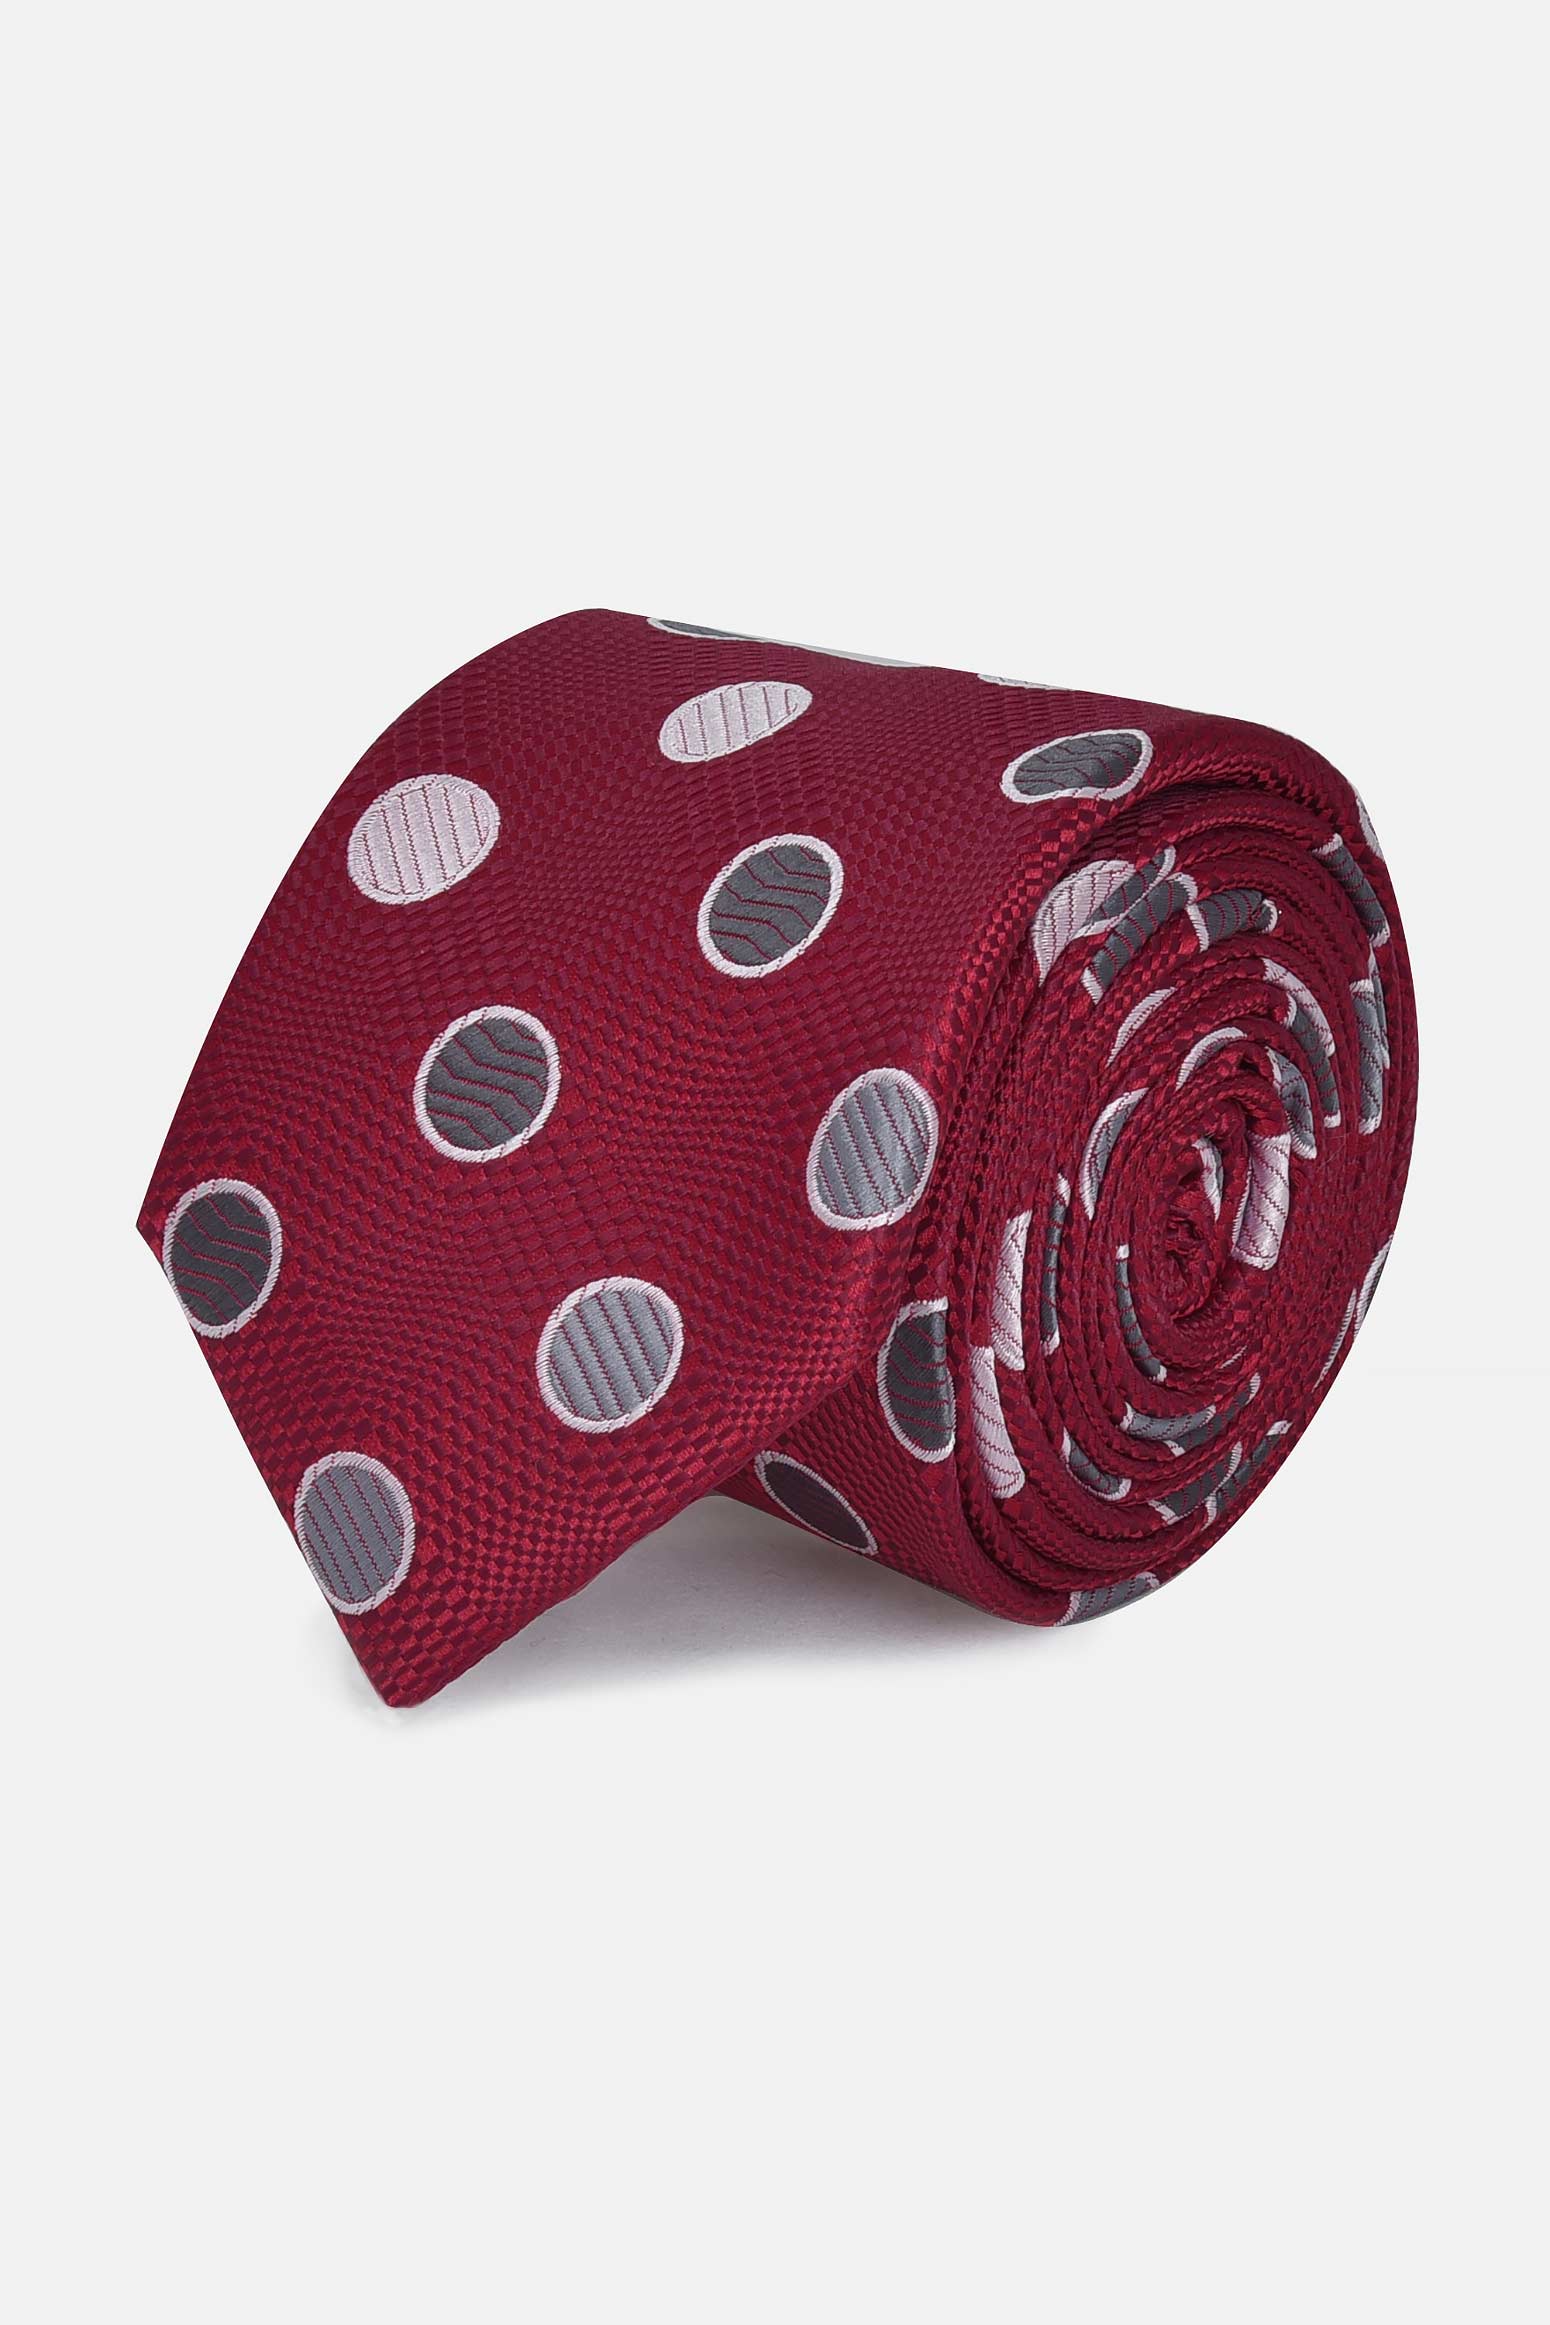 ανδρική-γραβάτα-με-δίχρωμους-κύκλους